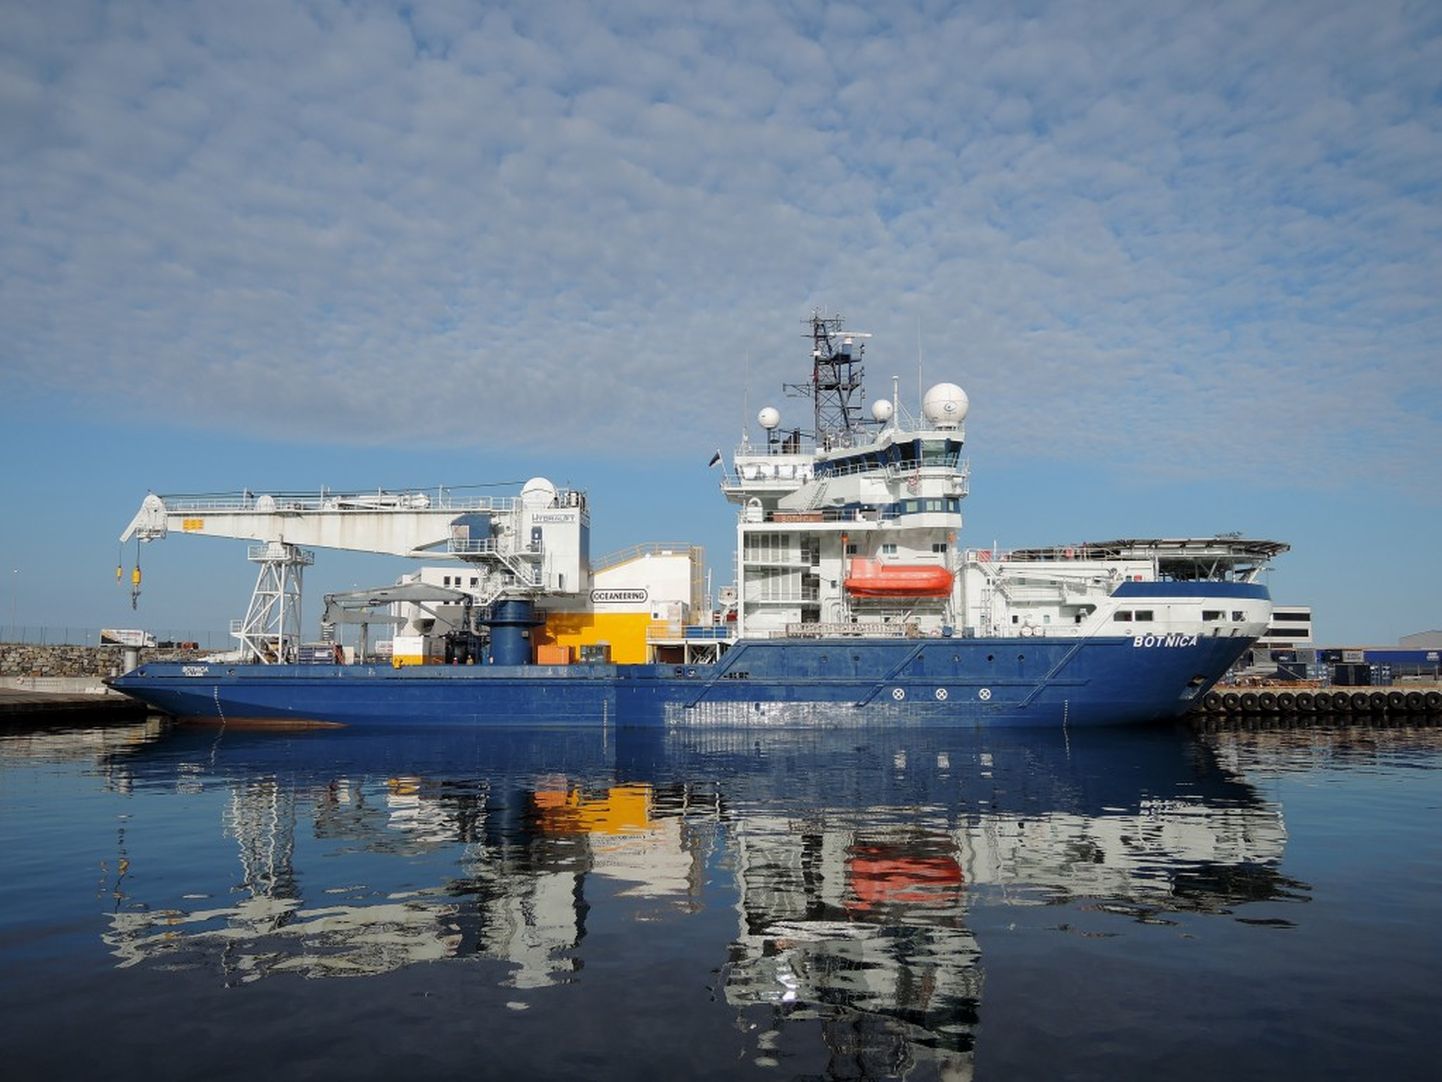 Botnica on TS Shipping OÜ multifunktsionaalne töölaev, mis lisaks jäämurdmistöödele on võimeline tegutsema ka offshore-toetuslaevana näiteks naftaväljadel ja tuukritöödel